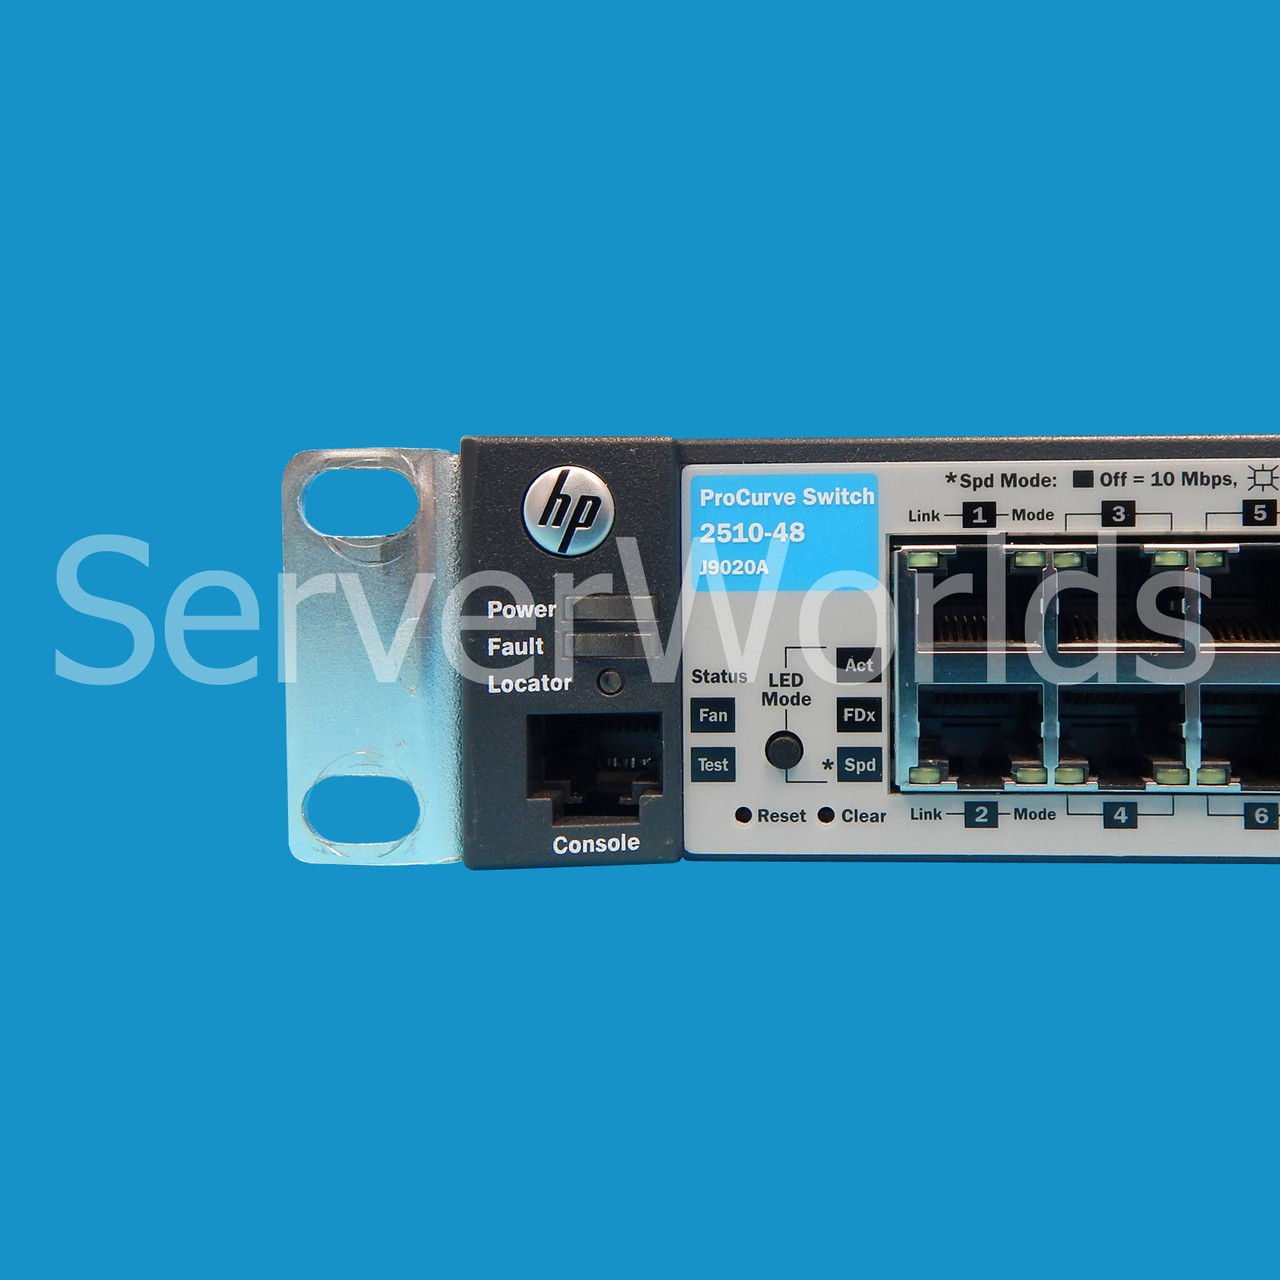 HP J9020A ProCurve 2510 48-Port Switch